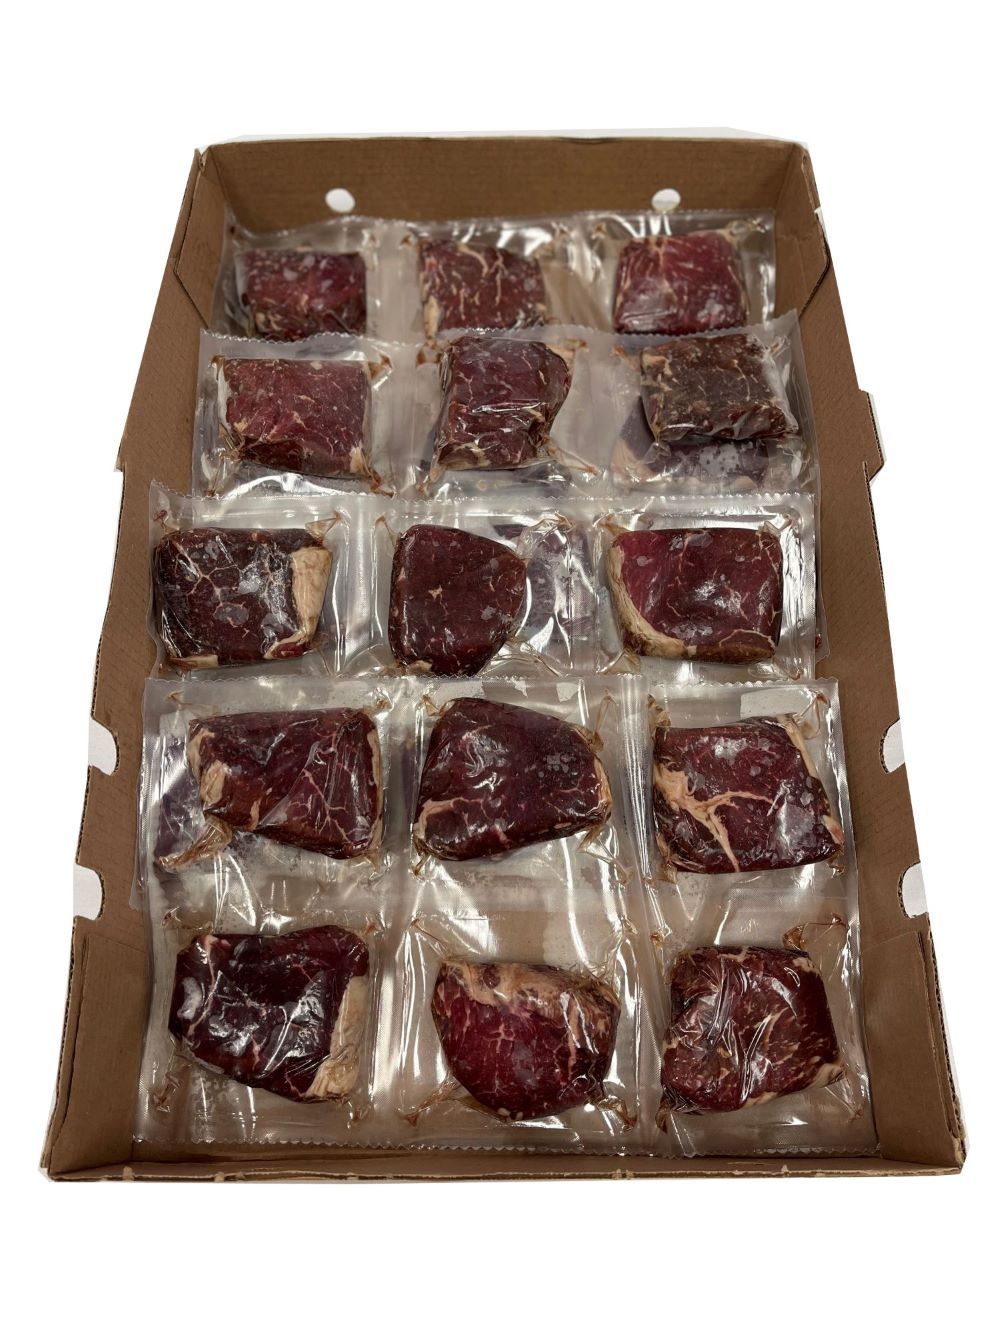 Buckhead Pride AAA Sirloin Steaks Approx. 24x170g [$42.09/kg] [$19.09/lb]